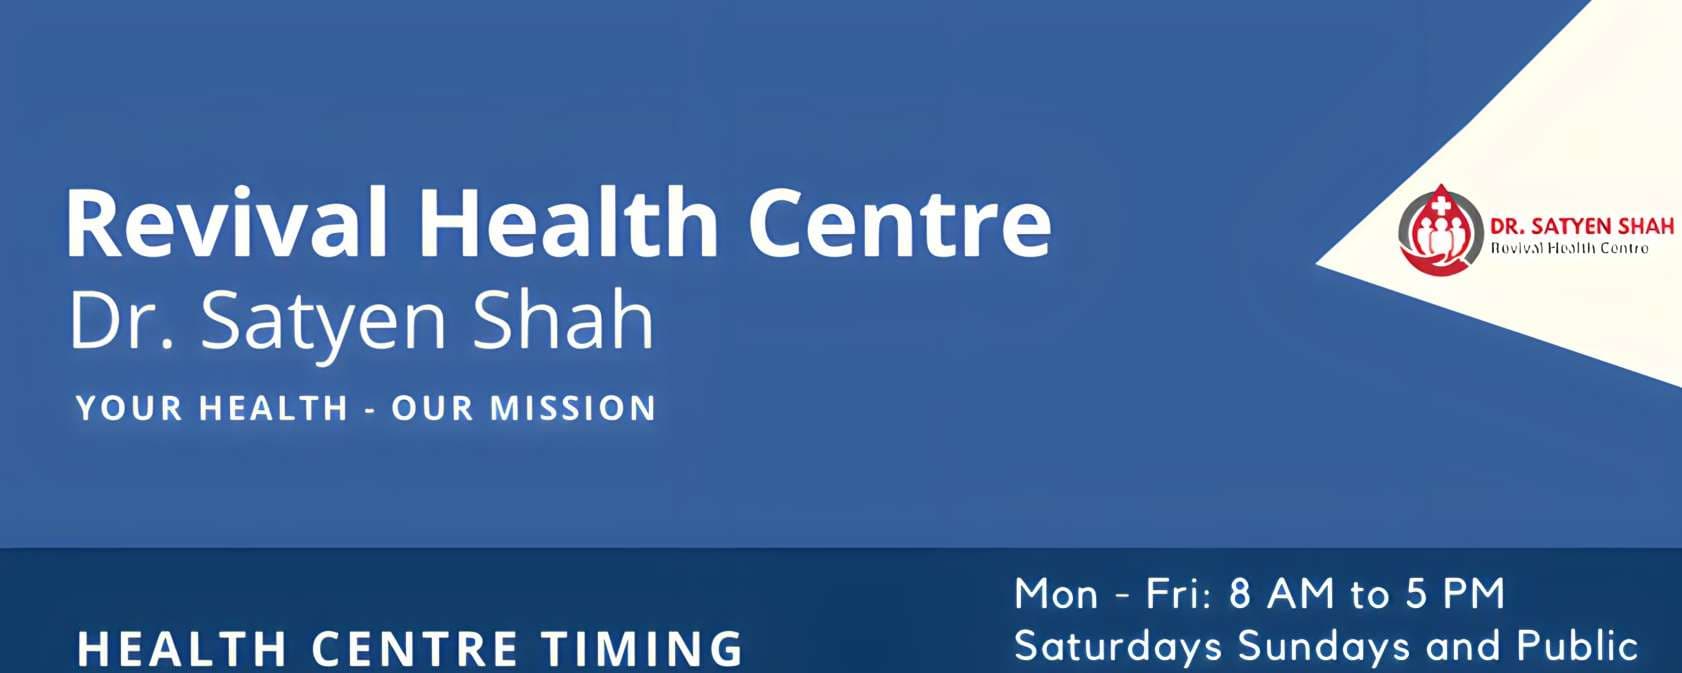 Revival Health Centre - Dr Satyen Shah